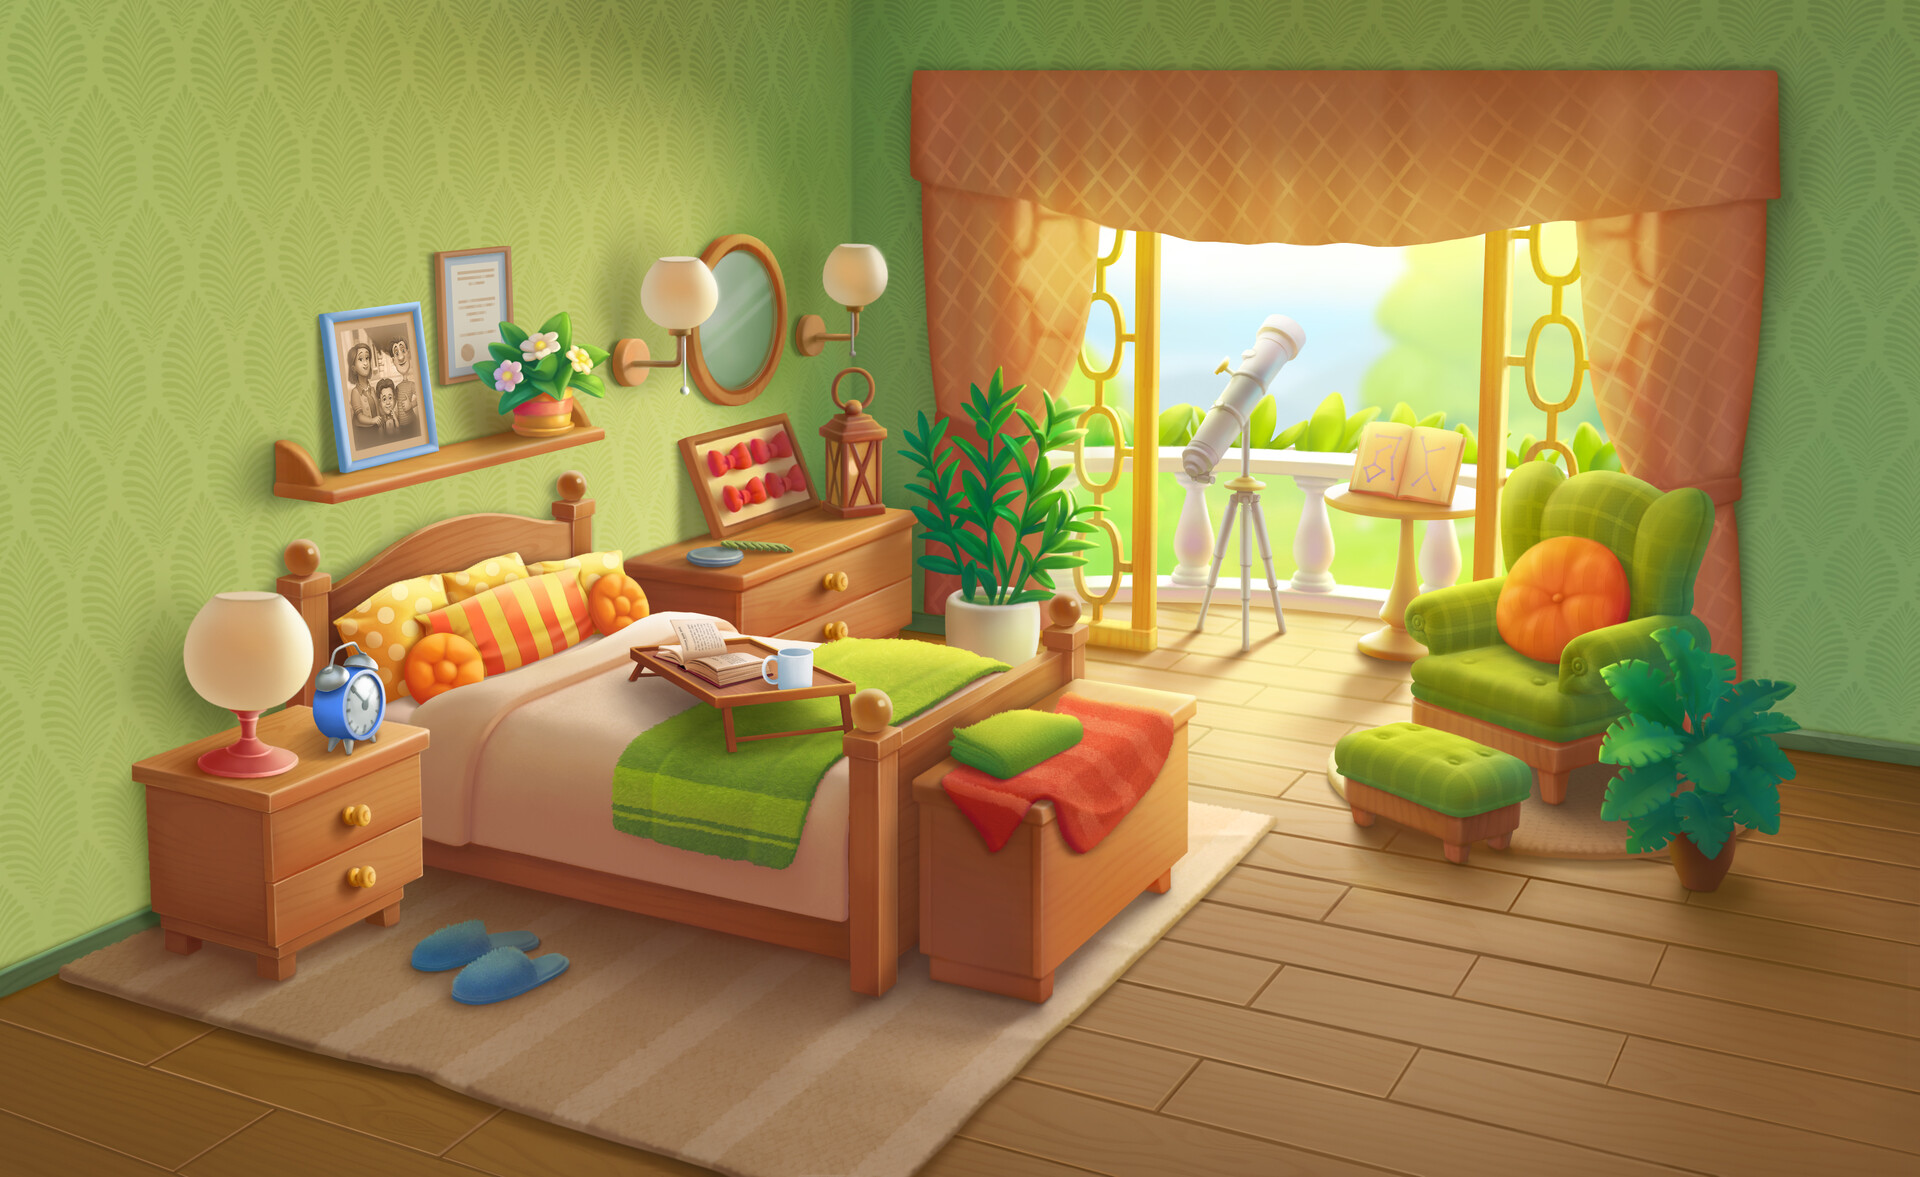 ArtStation - Bedroom 2d render